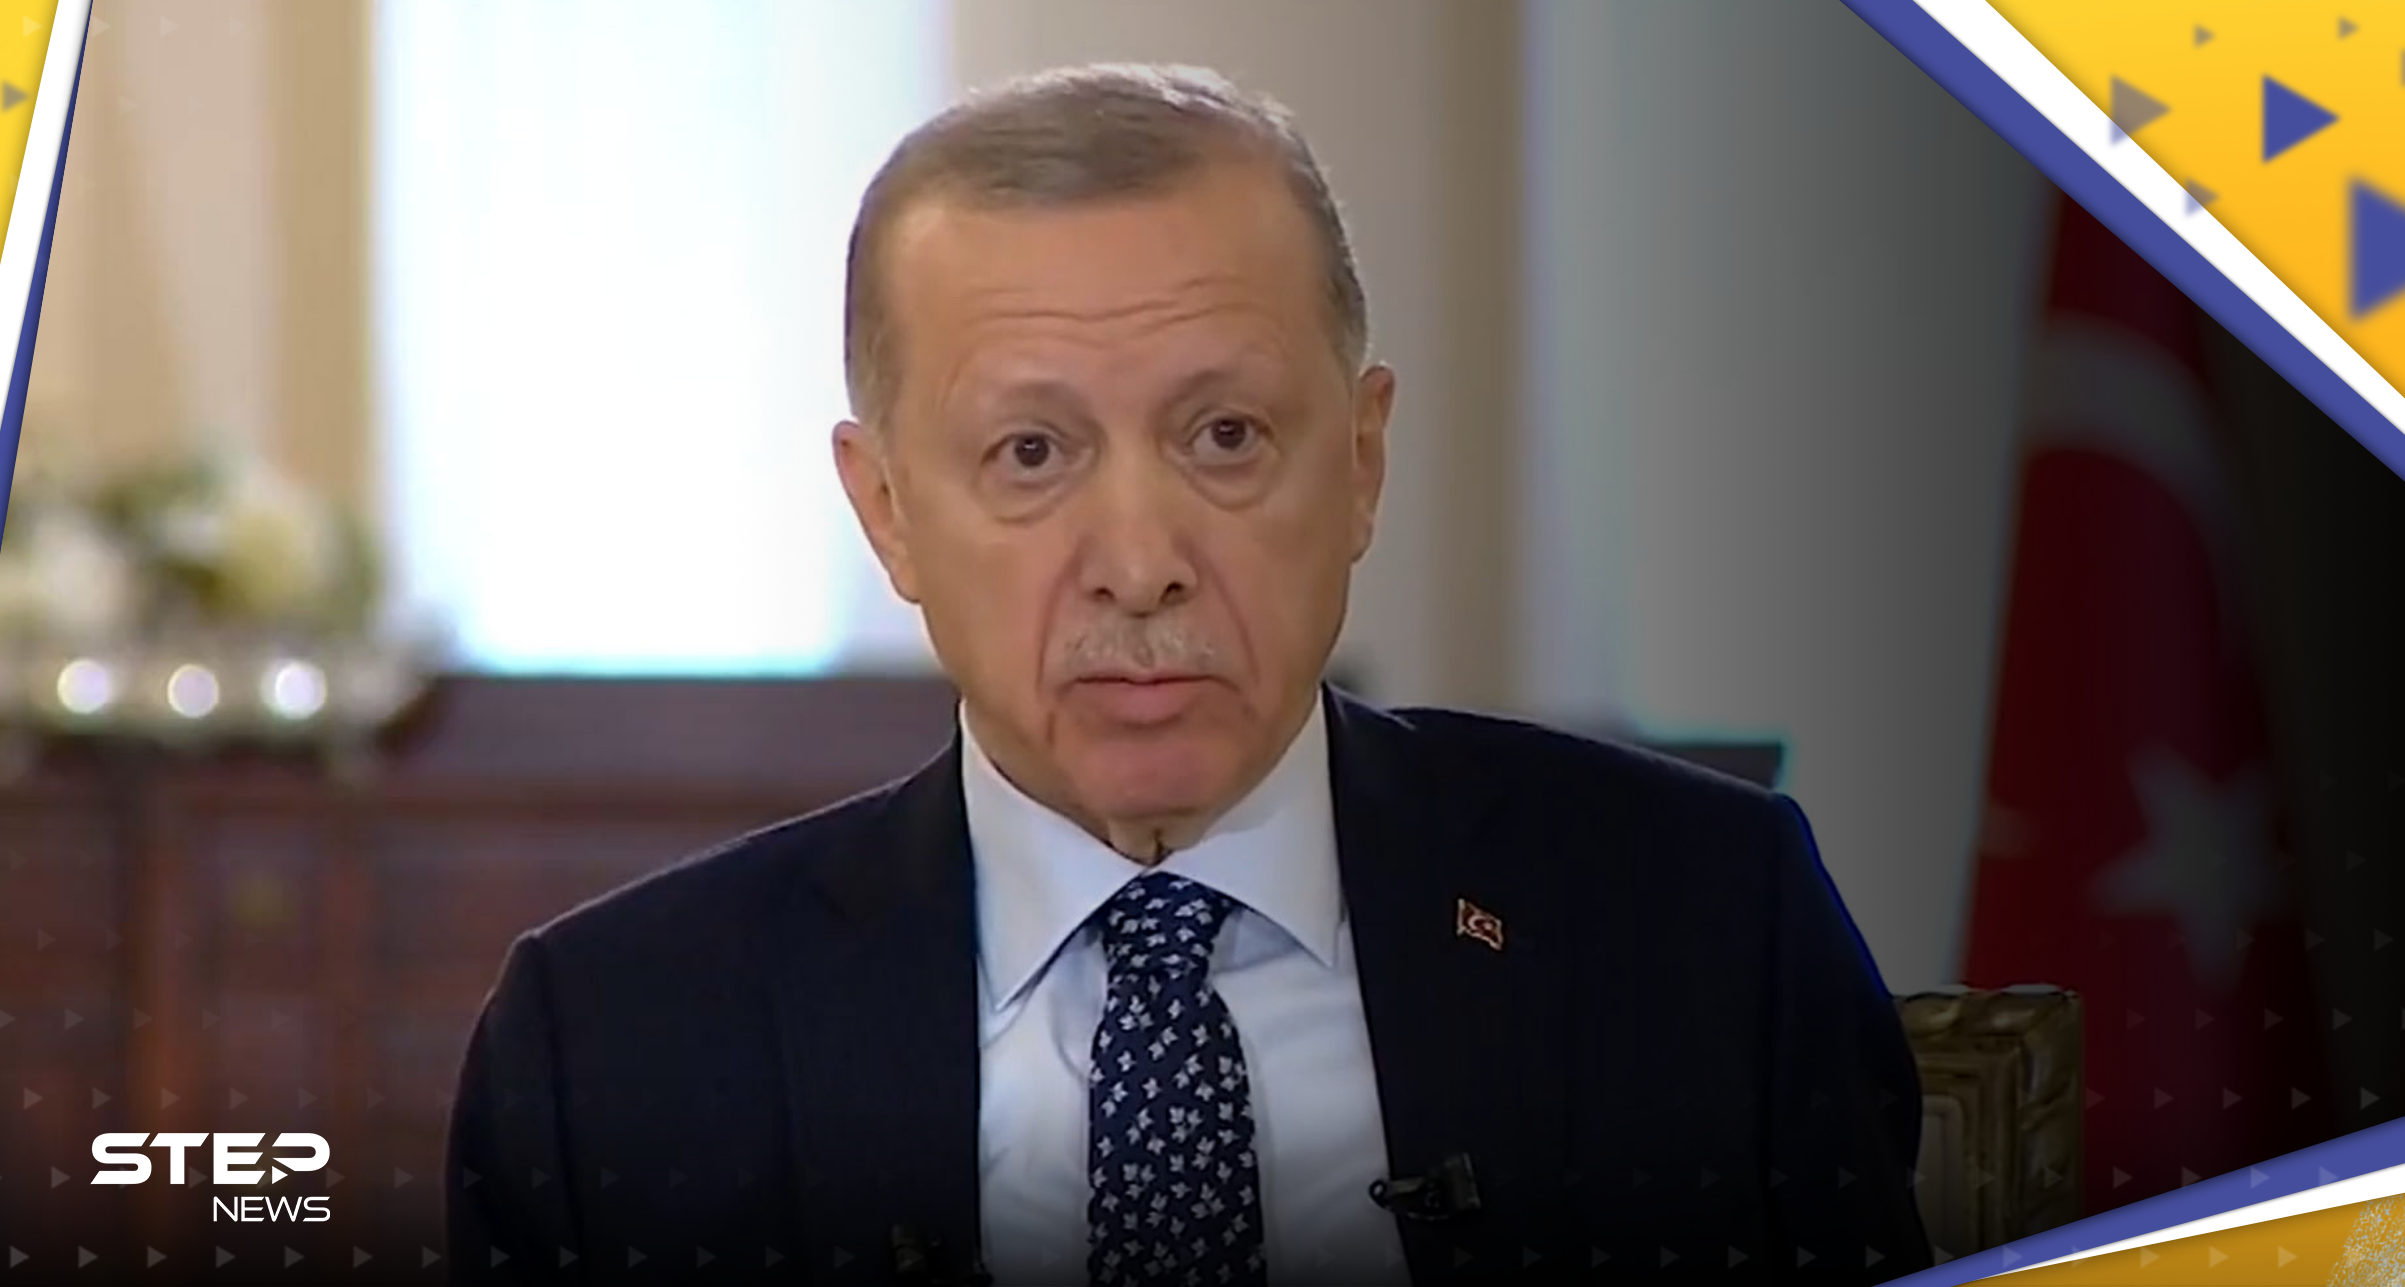 بالفيديو || الرئيس التركي يقطع مقابلة على الهواء مباشرة بسبب و"عكة صحية" ويعود ليوضّح ما جرى 